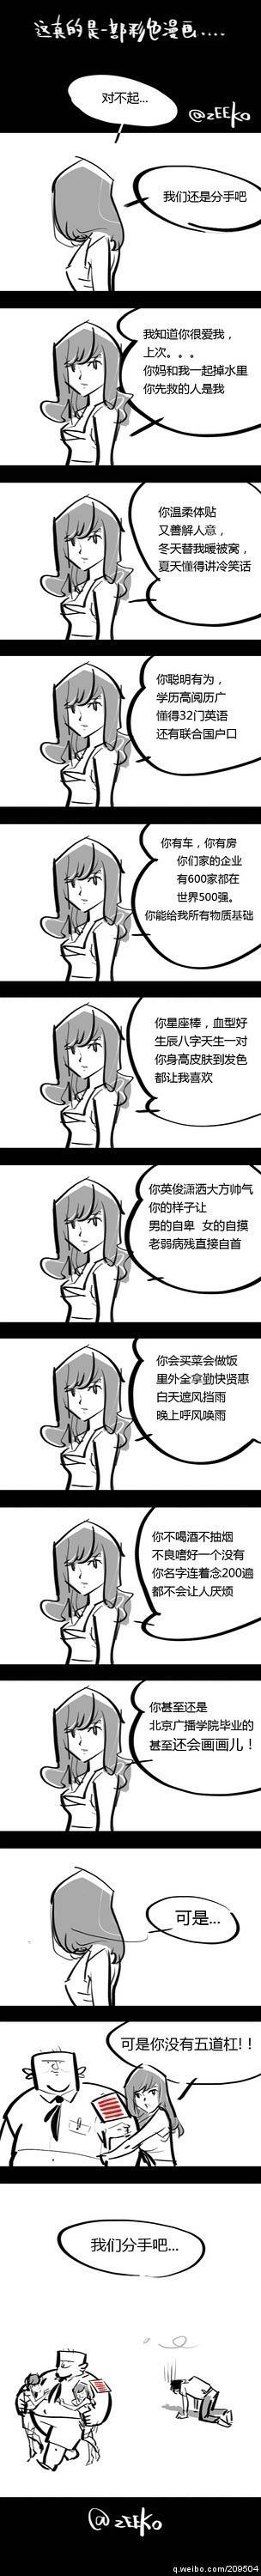 邪恶漫画爆笑囧图第34刊：新时代